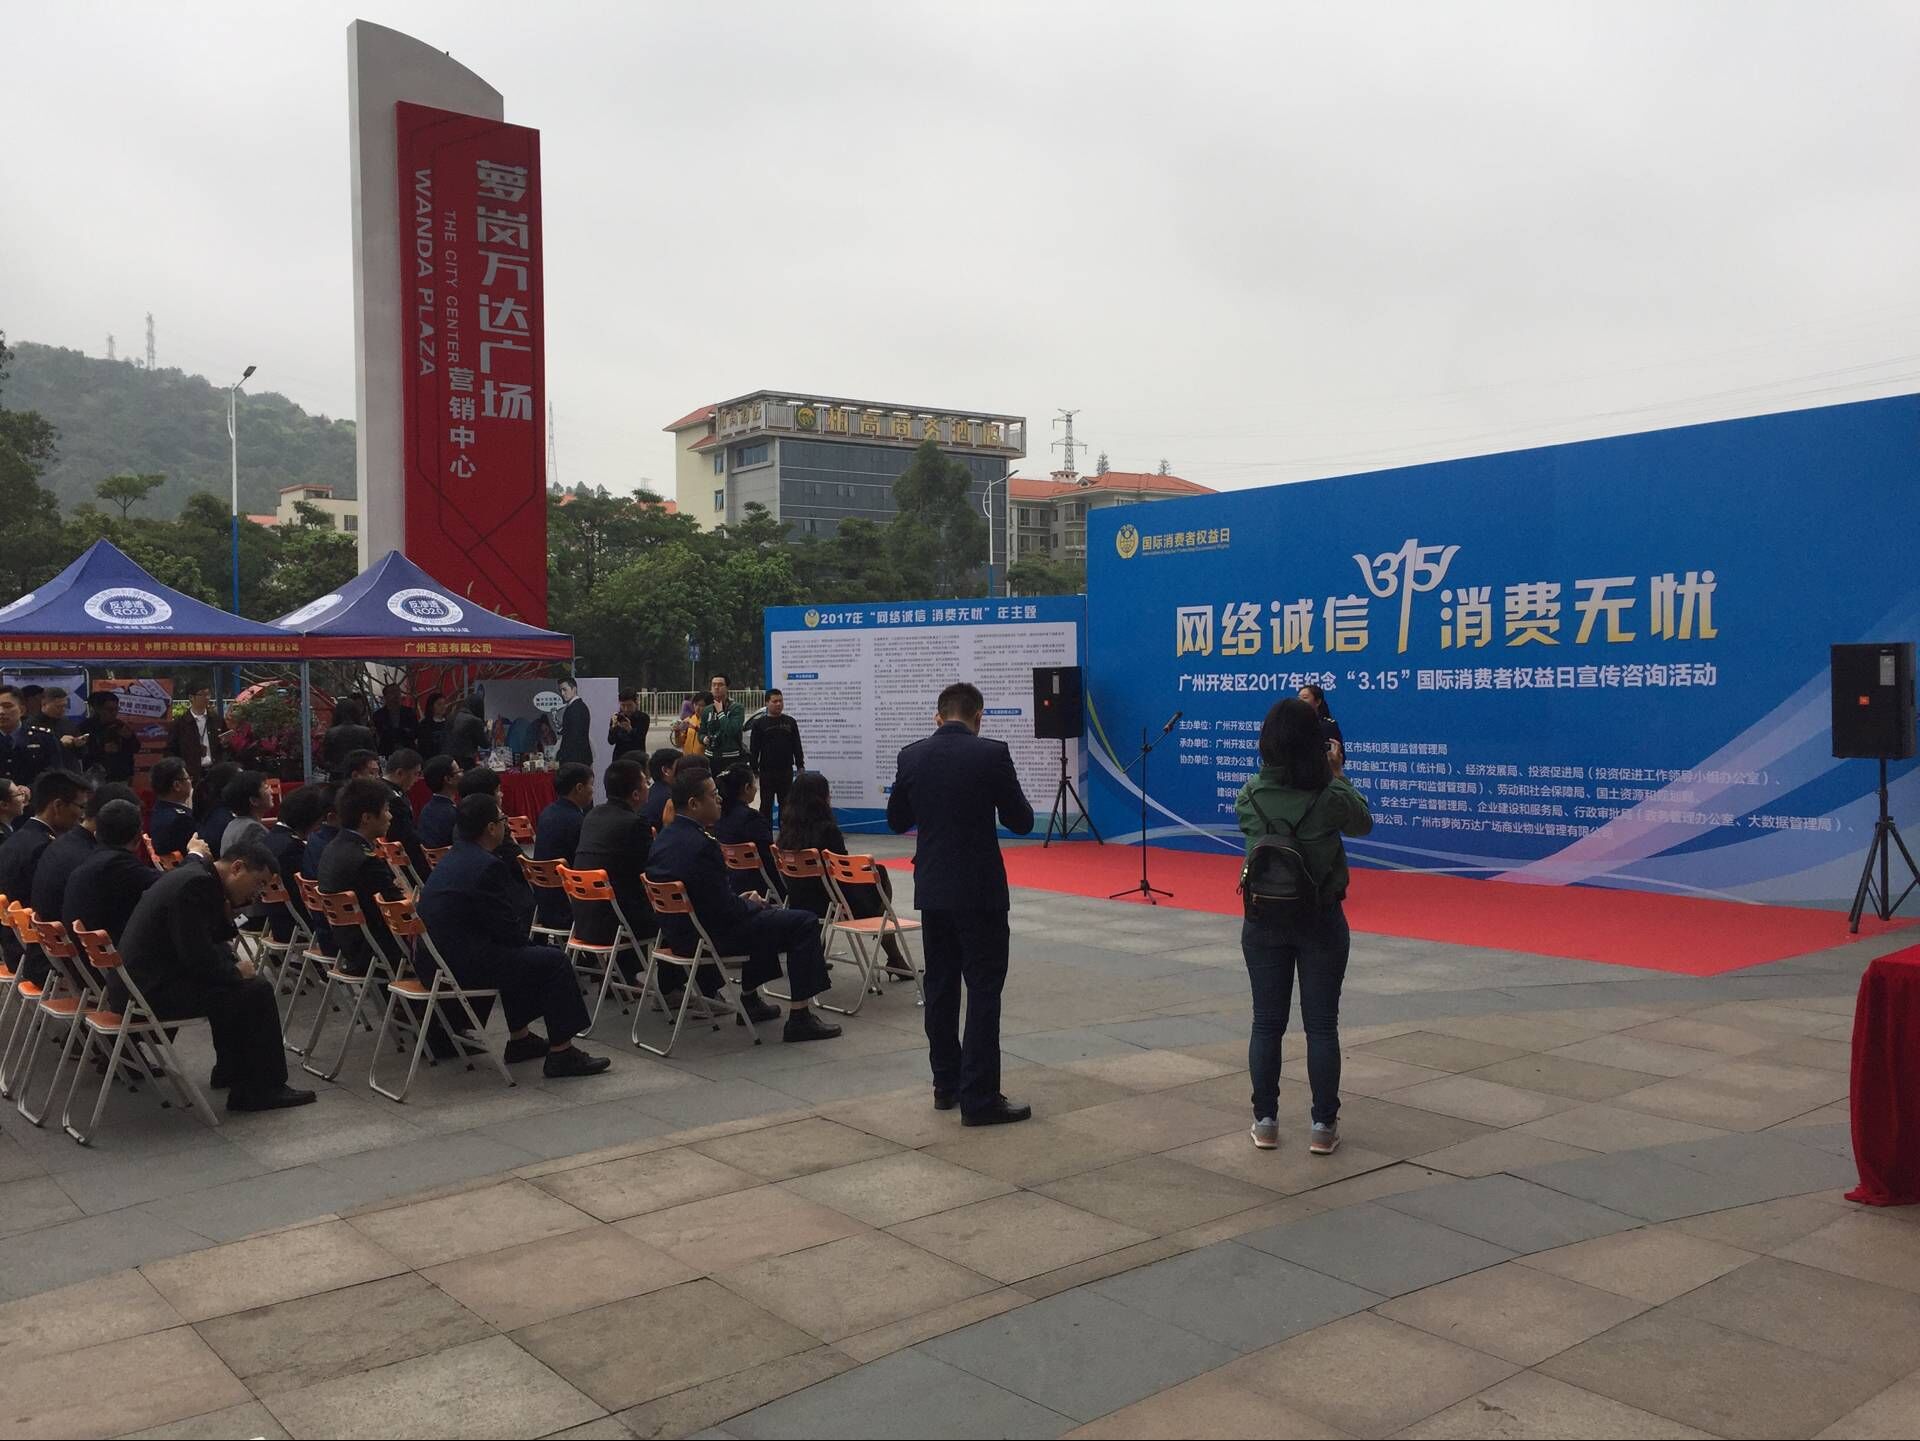 2017年广州开发区3·15宣传活动顺利结束